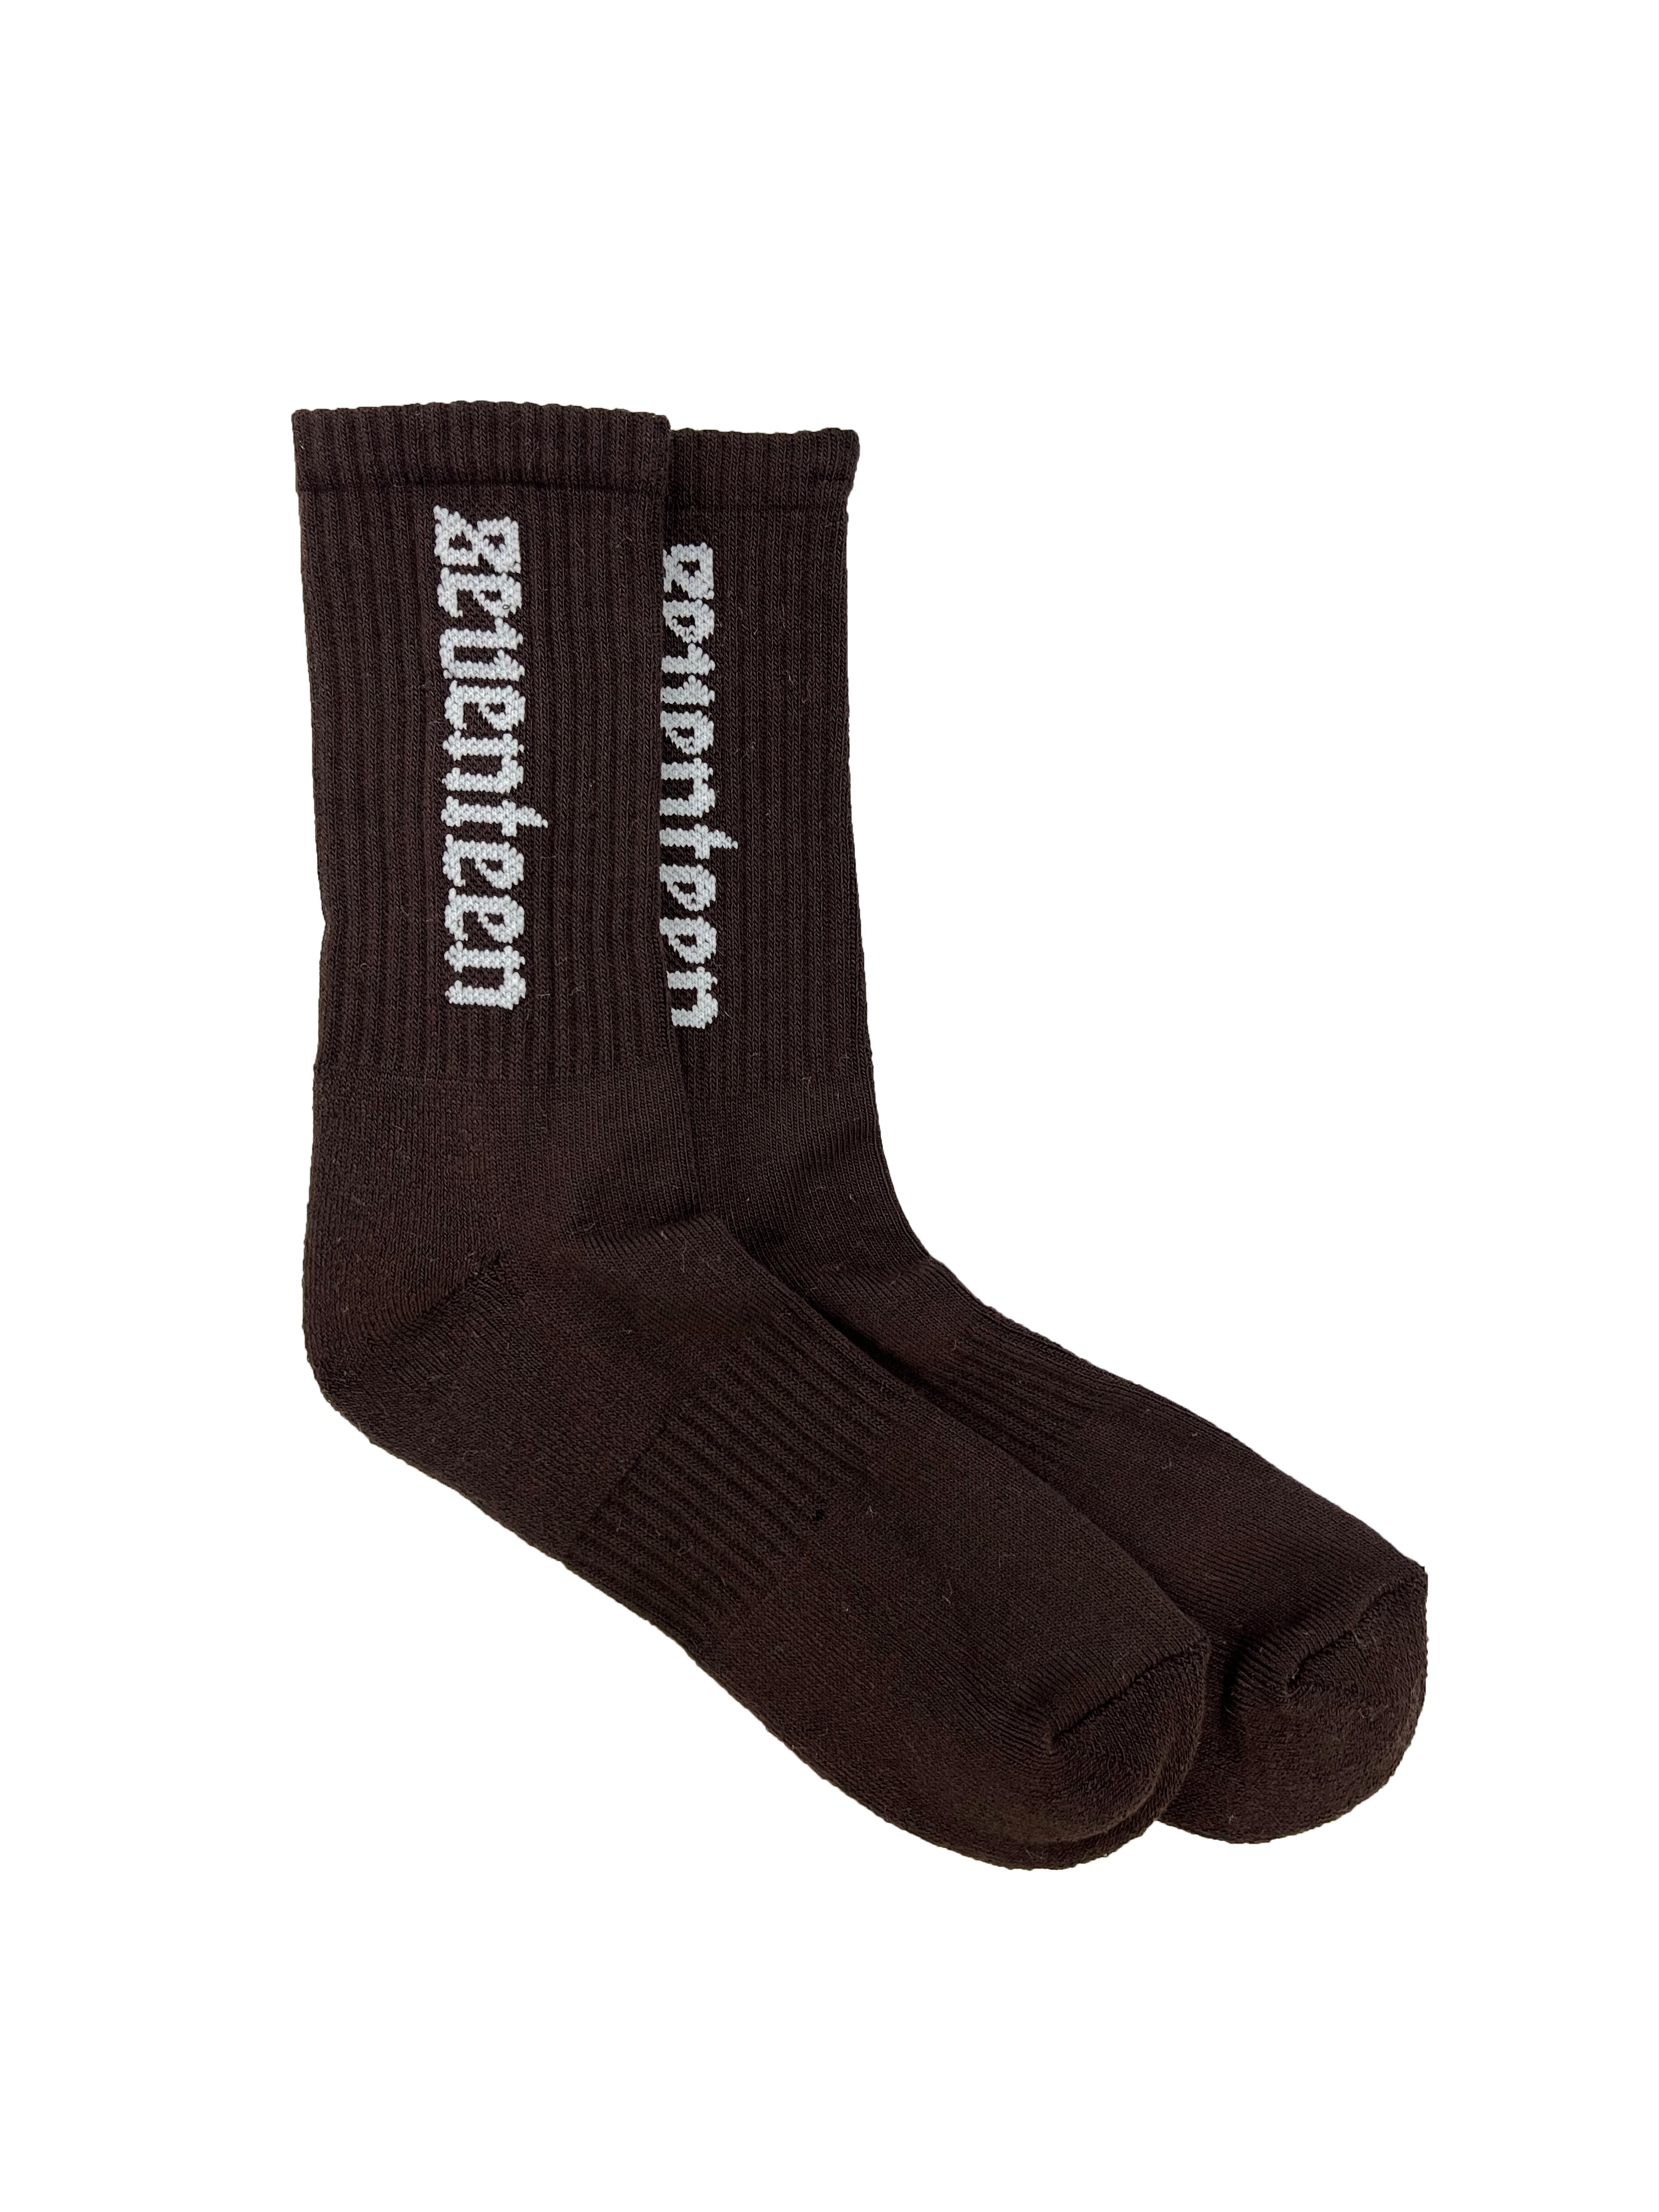 Seventeen brown socks